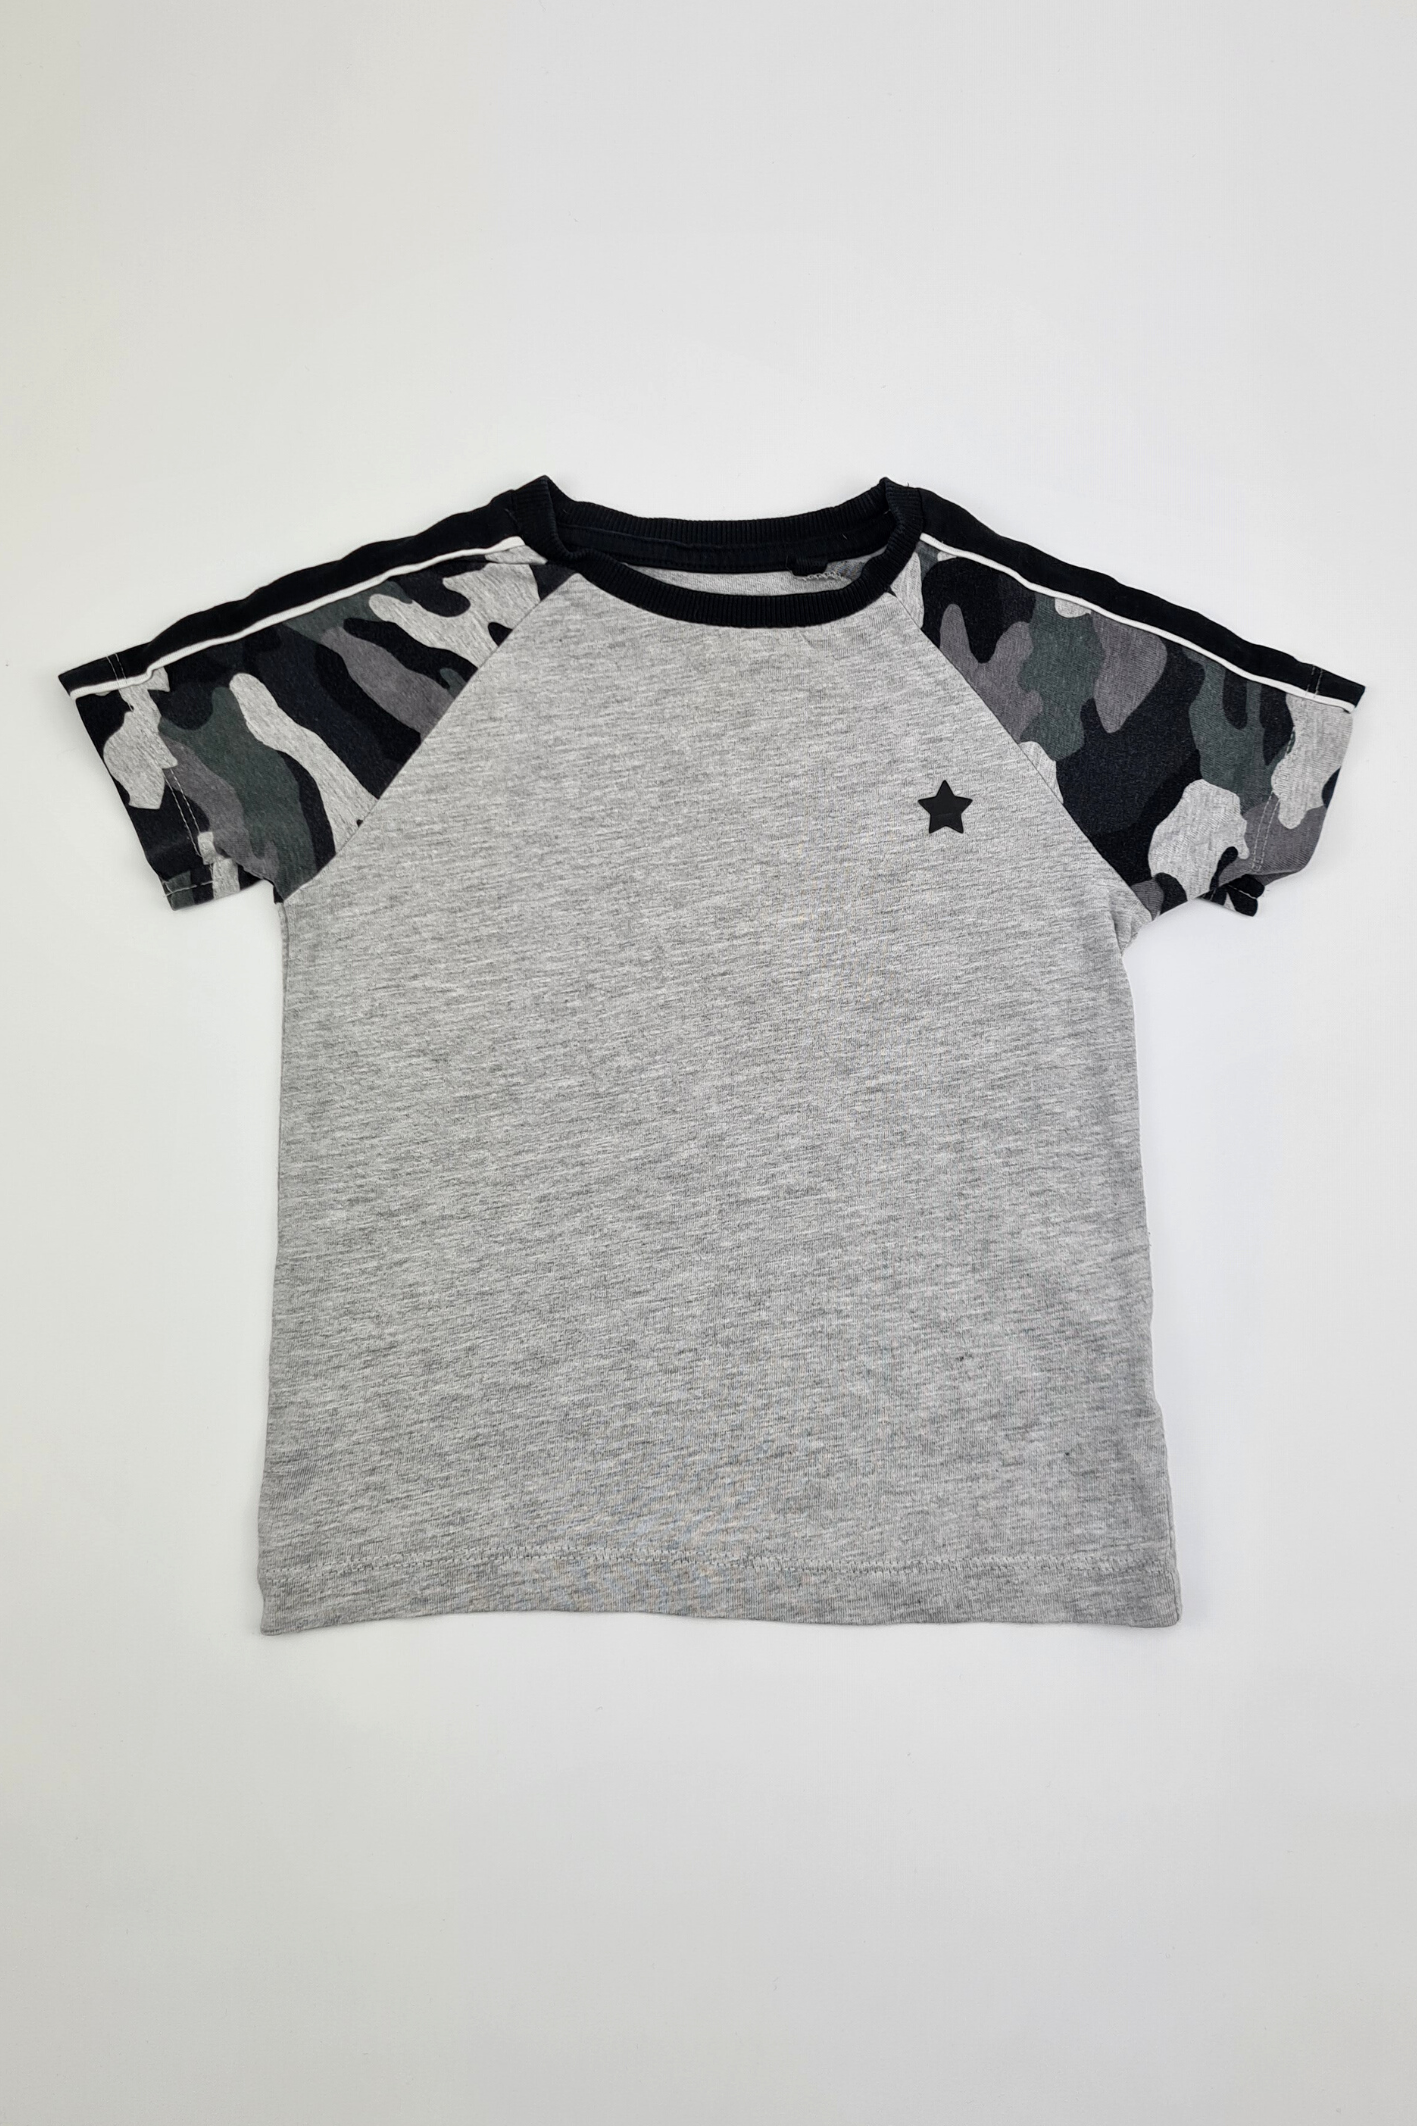 12-18m - T-shirt Camouflage Gris 100% Coton (Suivant)